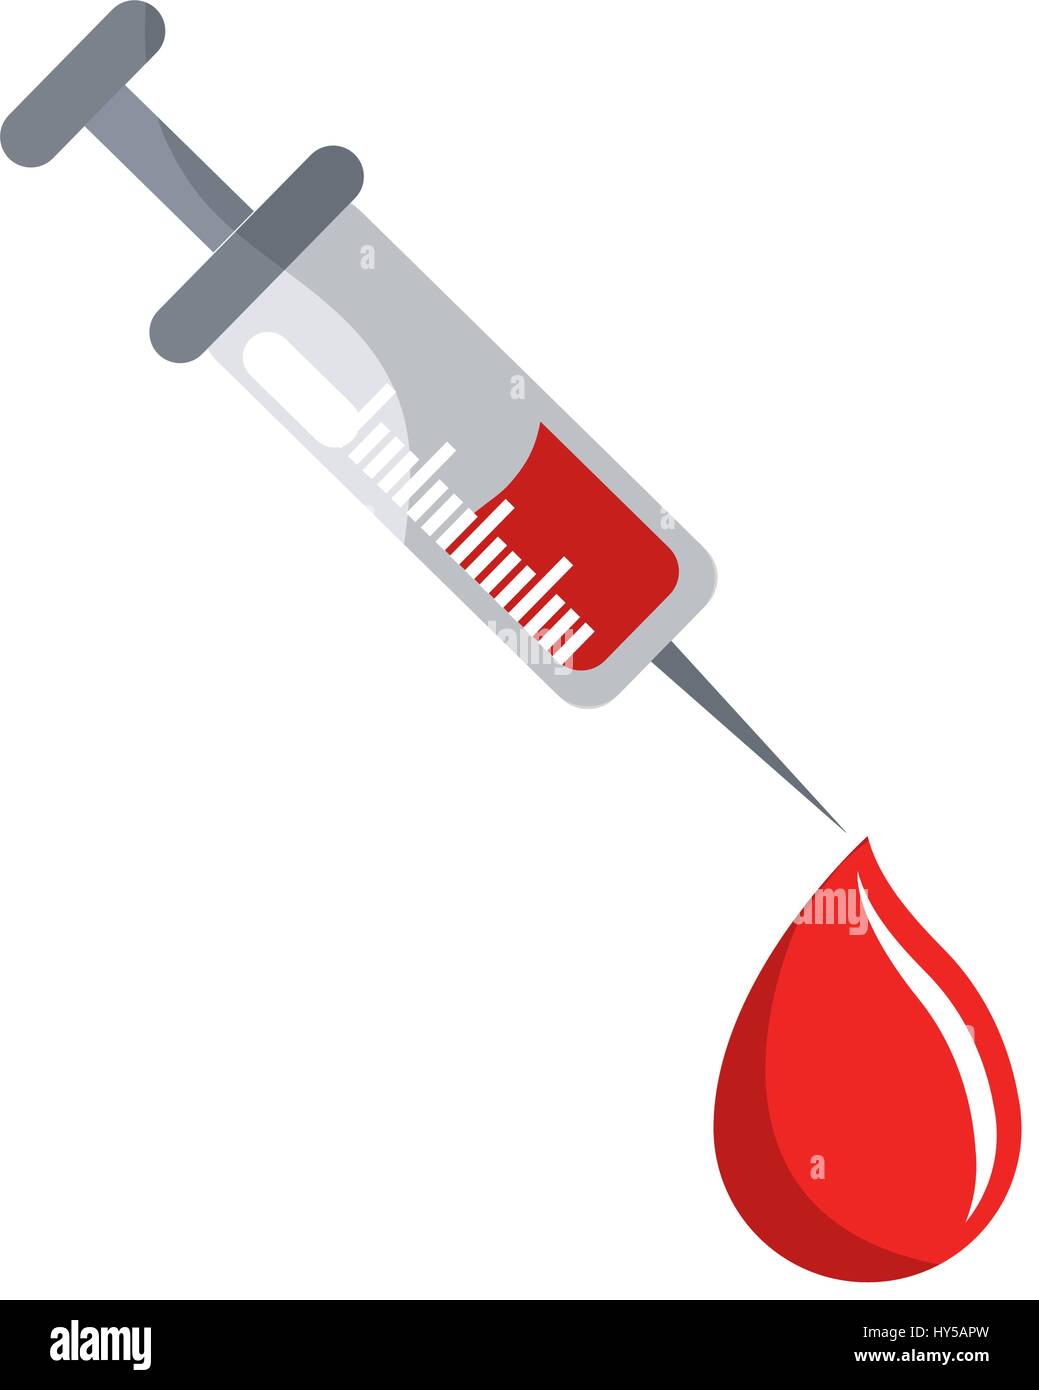 Siringa strumento di donazione di trattamento con goccia di sangue Immagine  e Vettoriale - Alamy